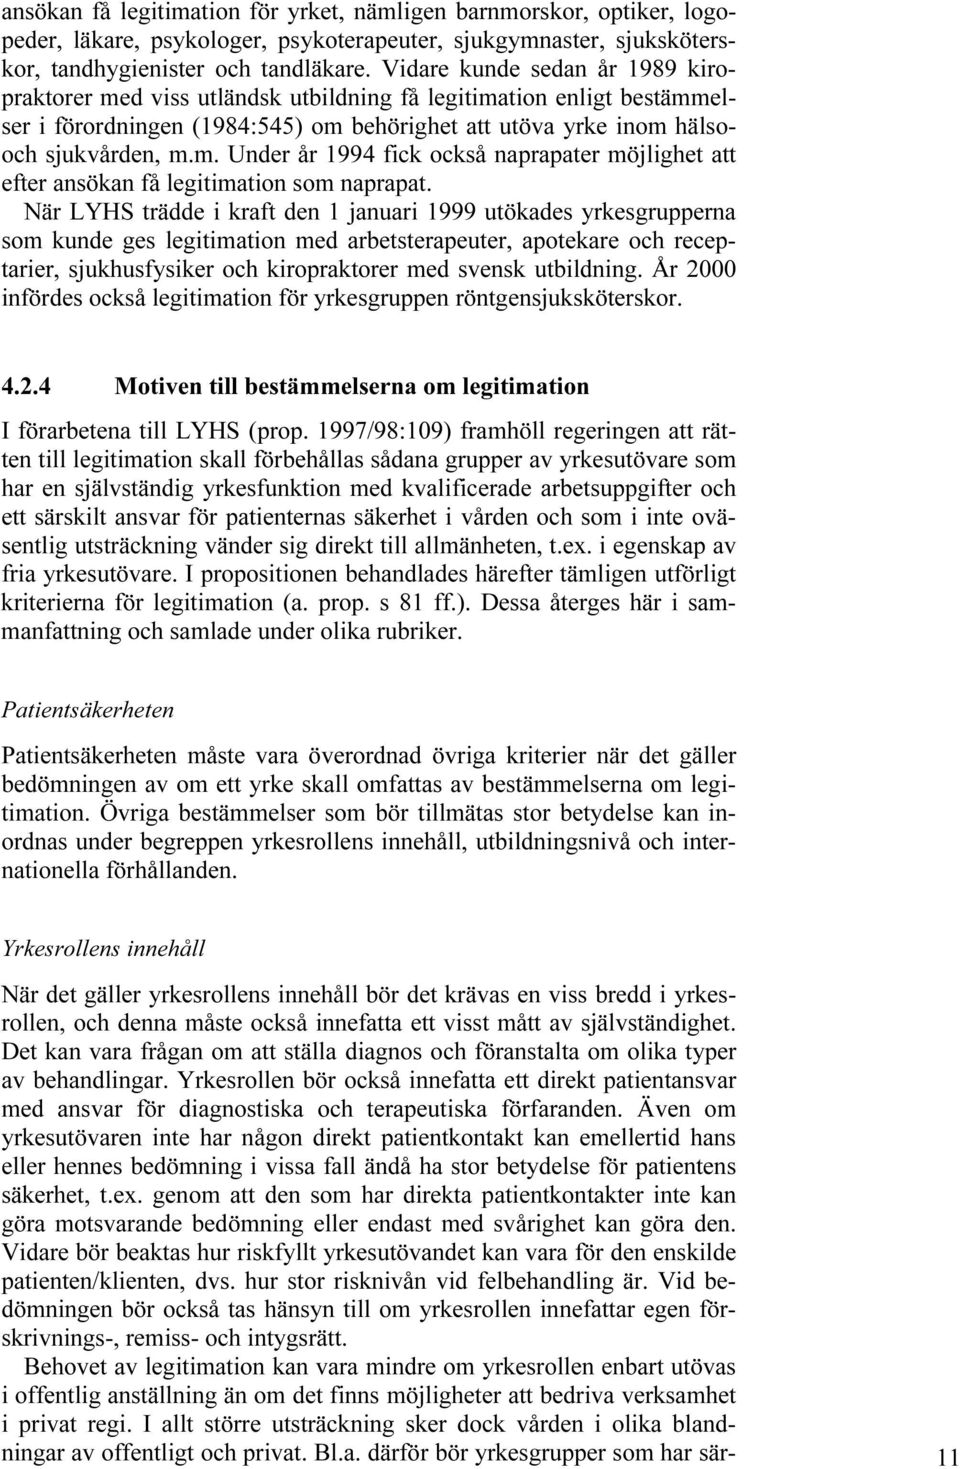 När LYHS trädde i kraft den 1 januari 1999 utökades yrkesgrupperna som kunde ges legitimation med arbetsterapeuter, apotekare och receptarier, sjukhusfysiker och kiropraktorer med svensk utbildning.